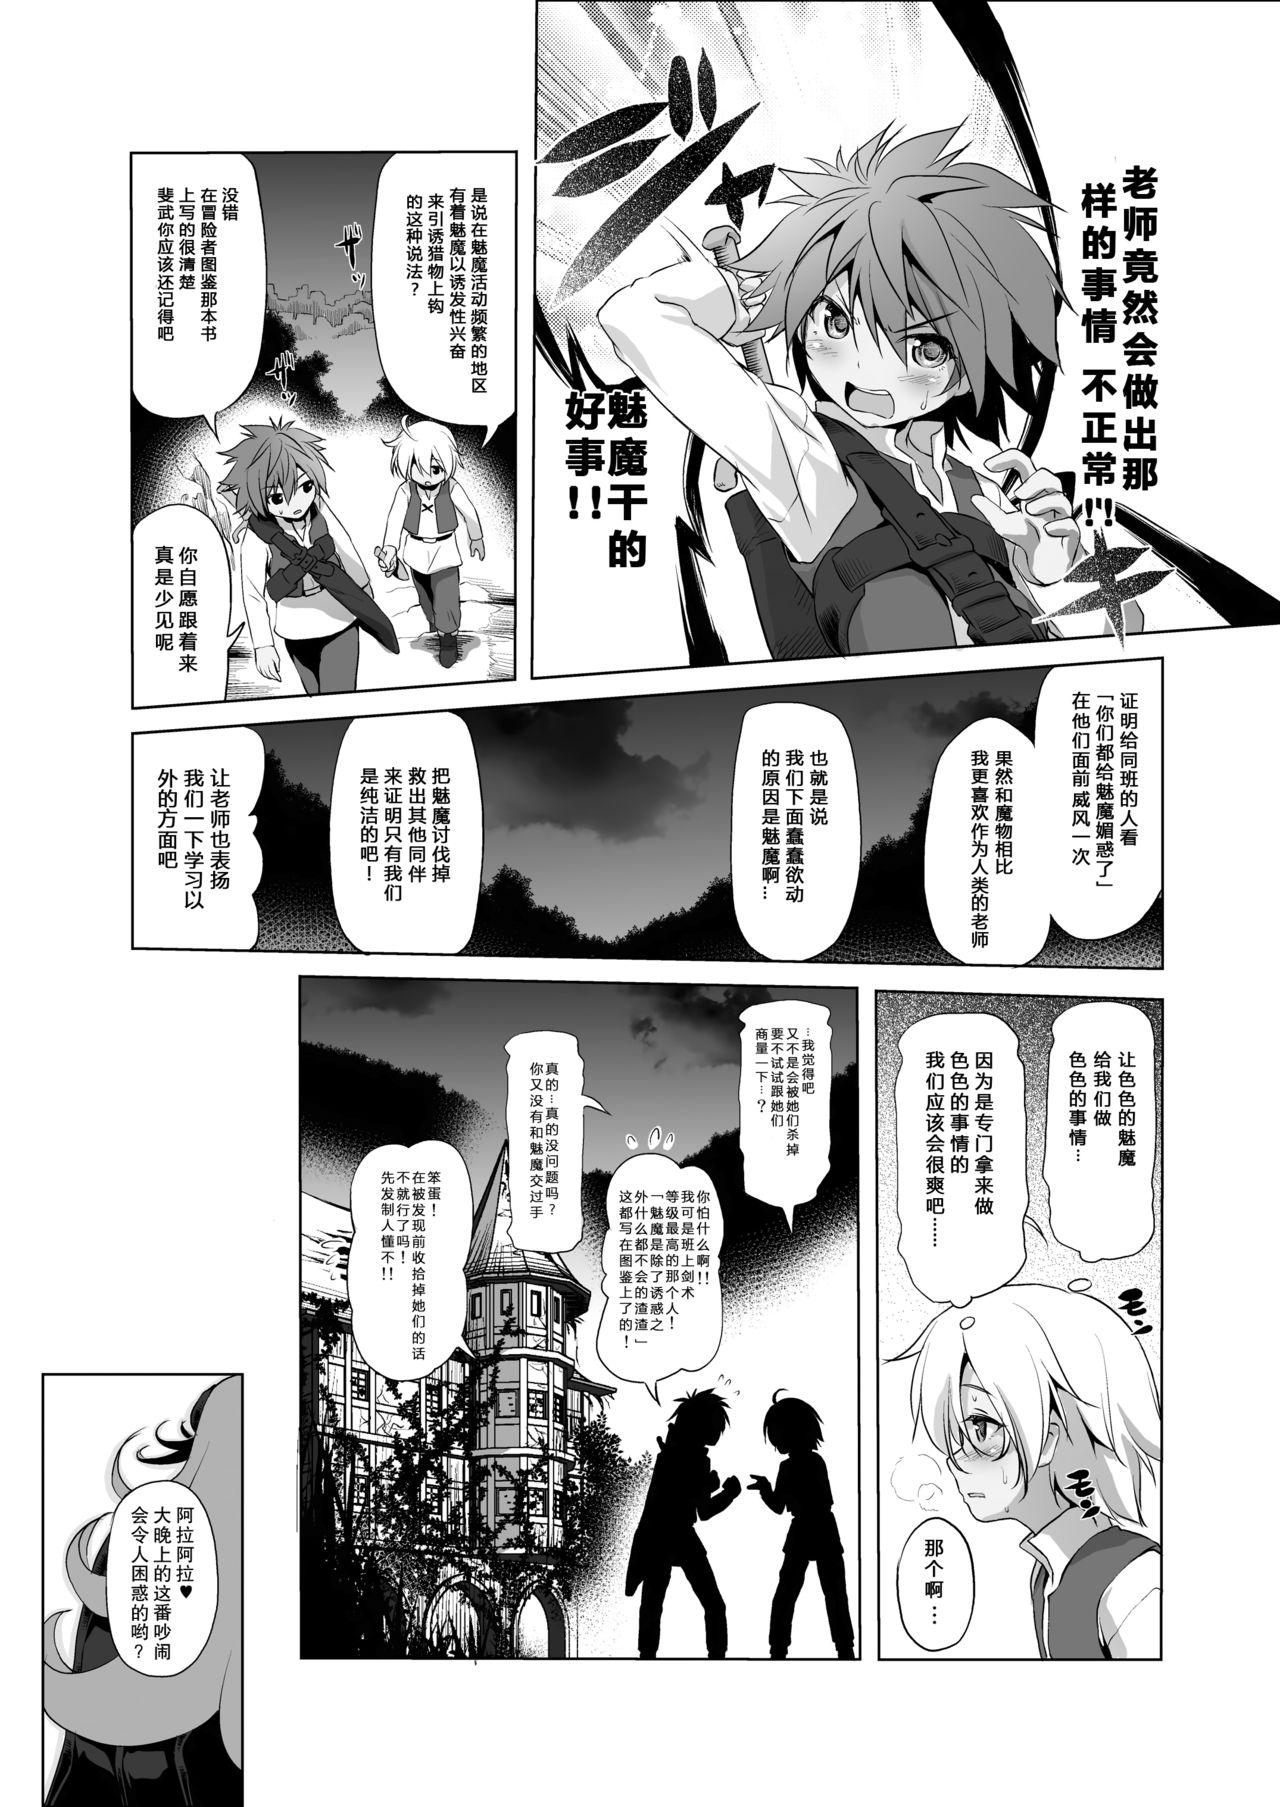 Ftv Girls Makotoni Zannen desu ga Bouken no Sho 3 wa Kiete Shimaimashita. - Original Gayemo - Page 11